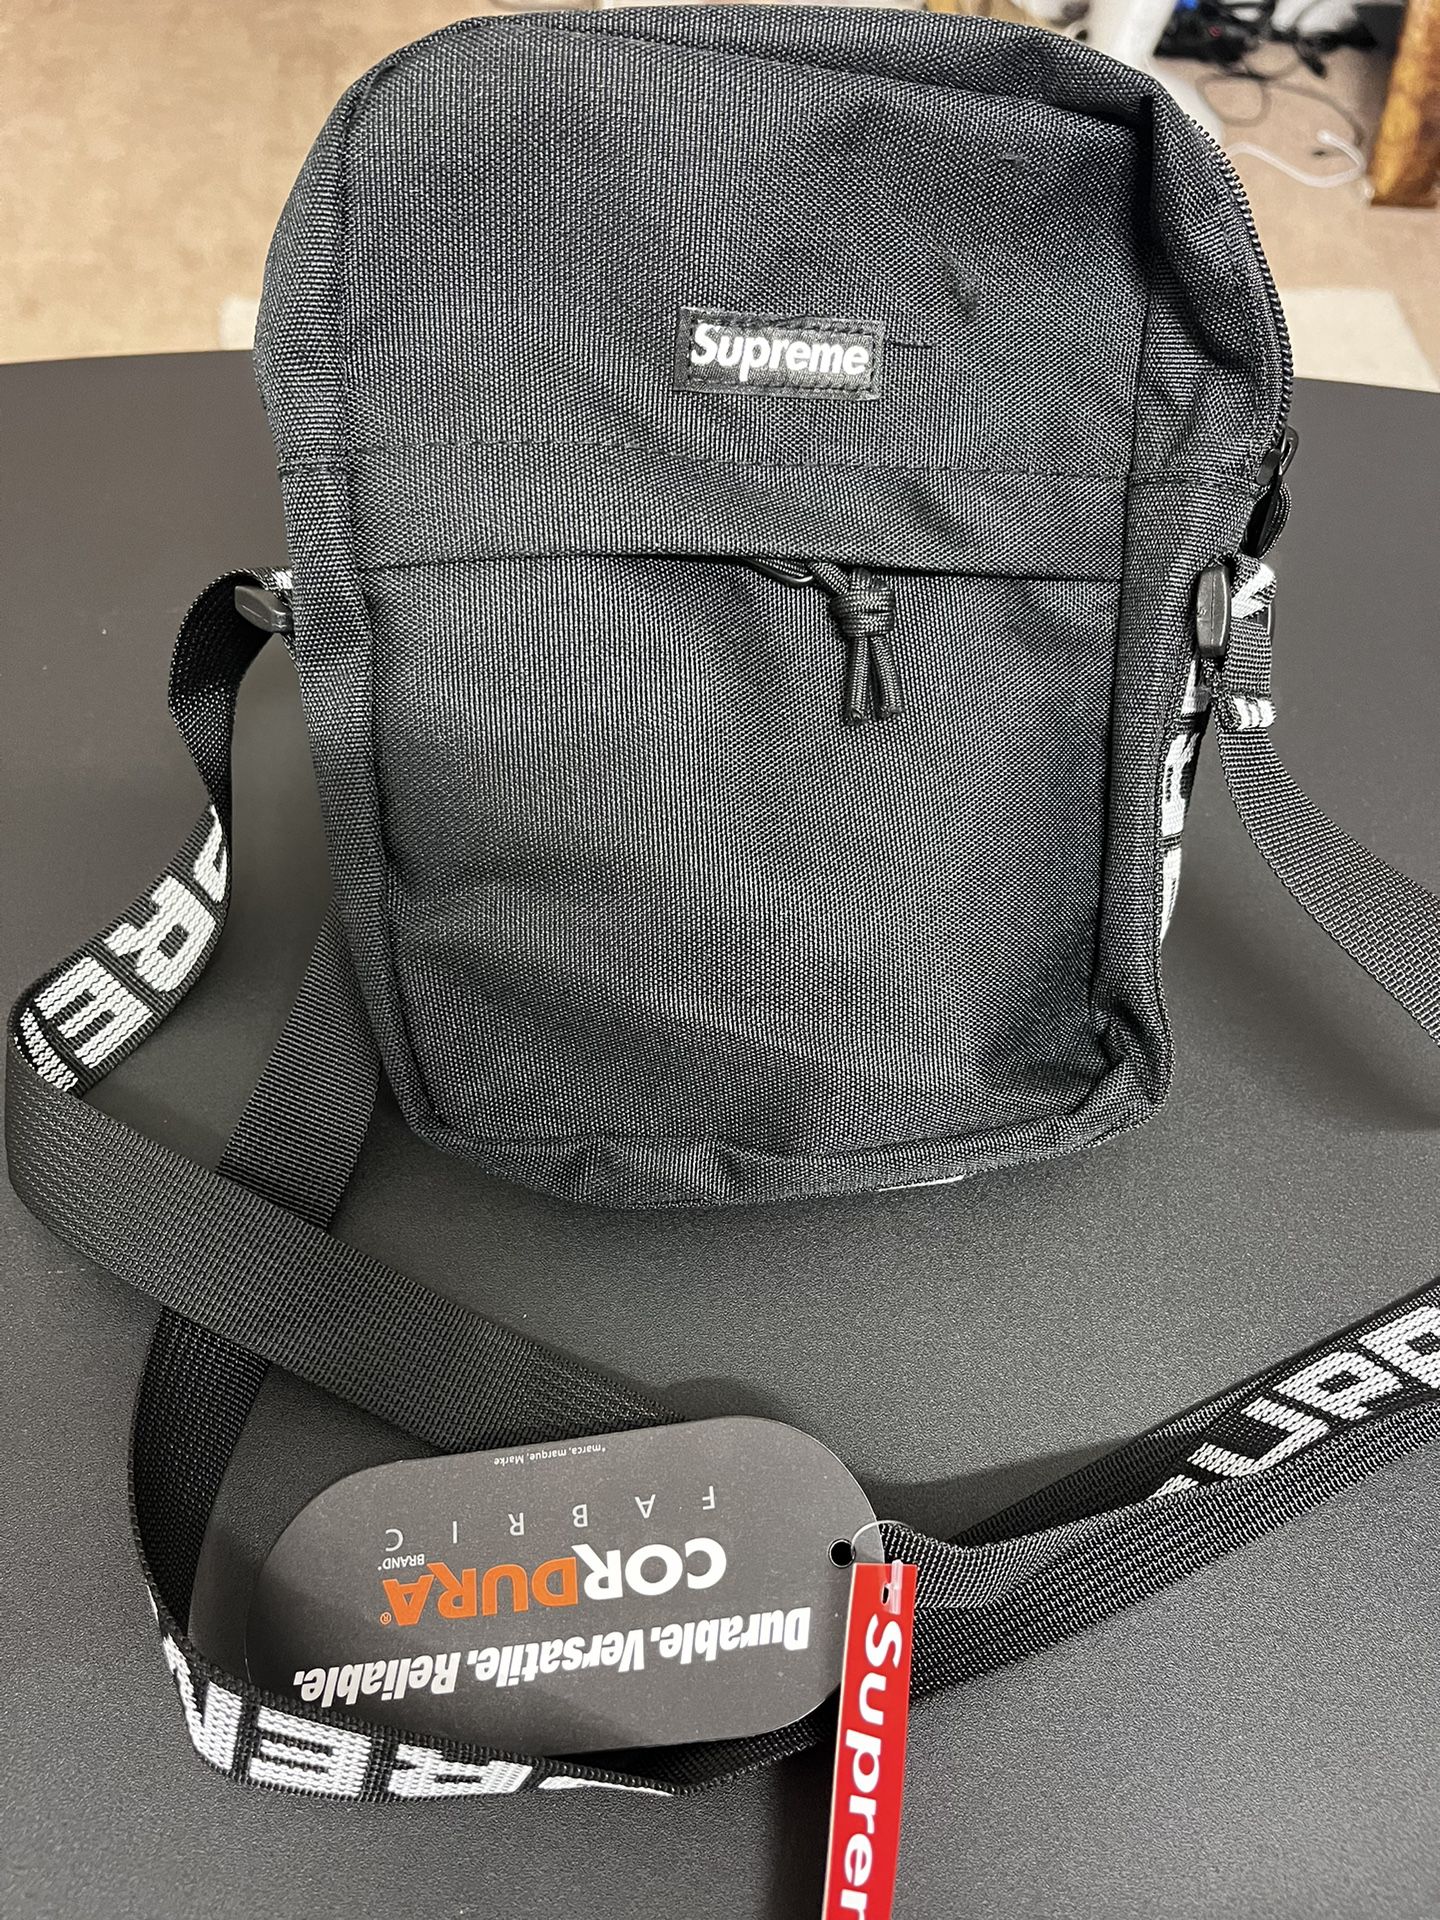 SUPREME SS18 Shoulder Bag Review & LEGIT CHECK! COMPARISON 